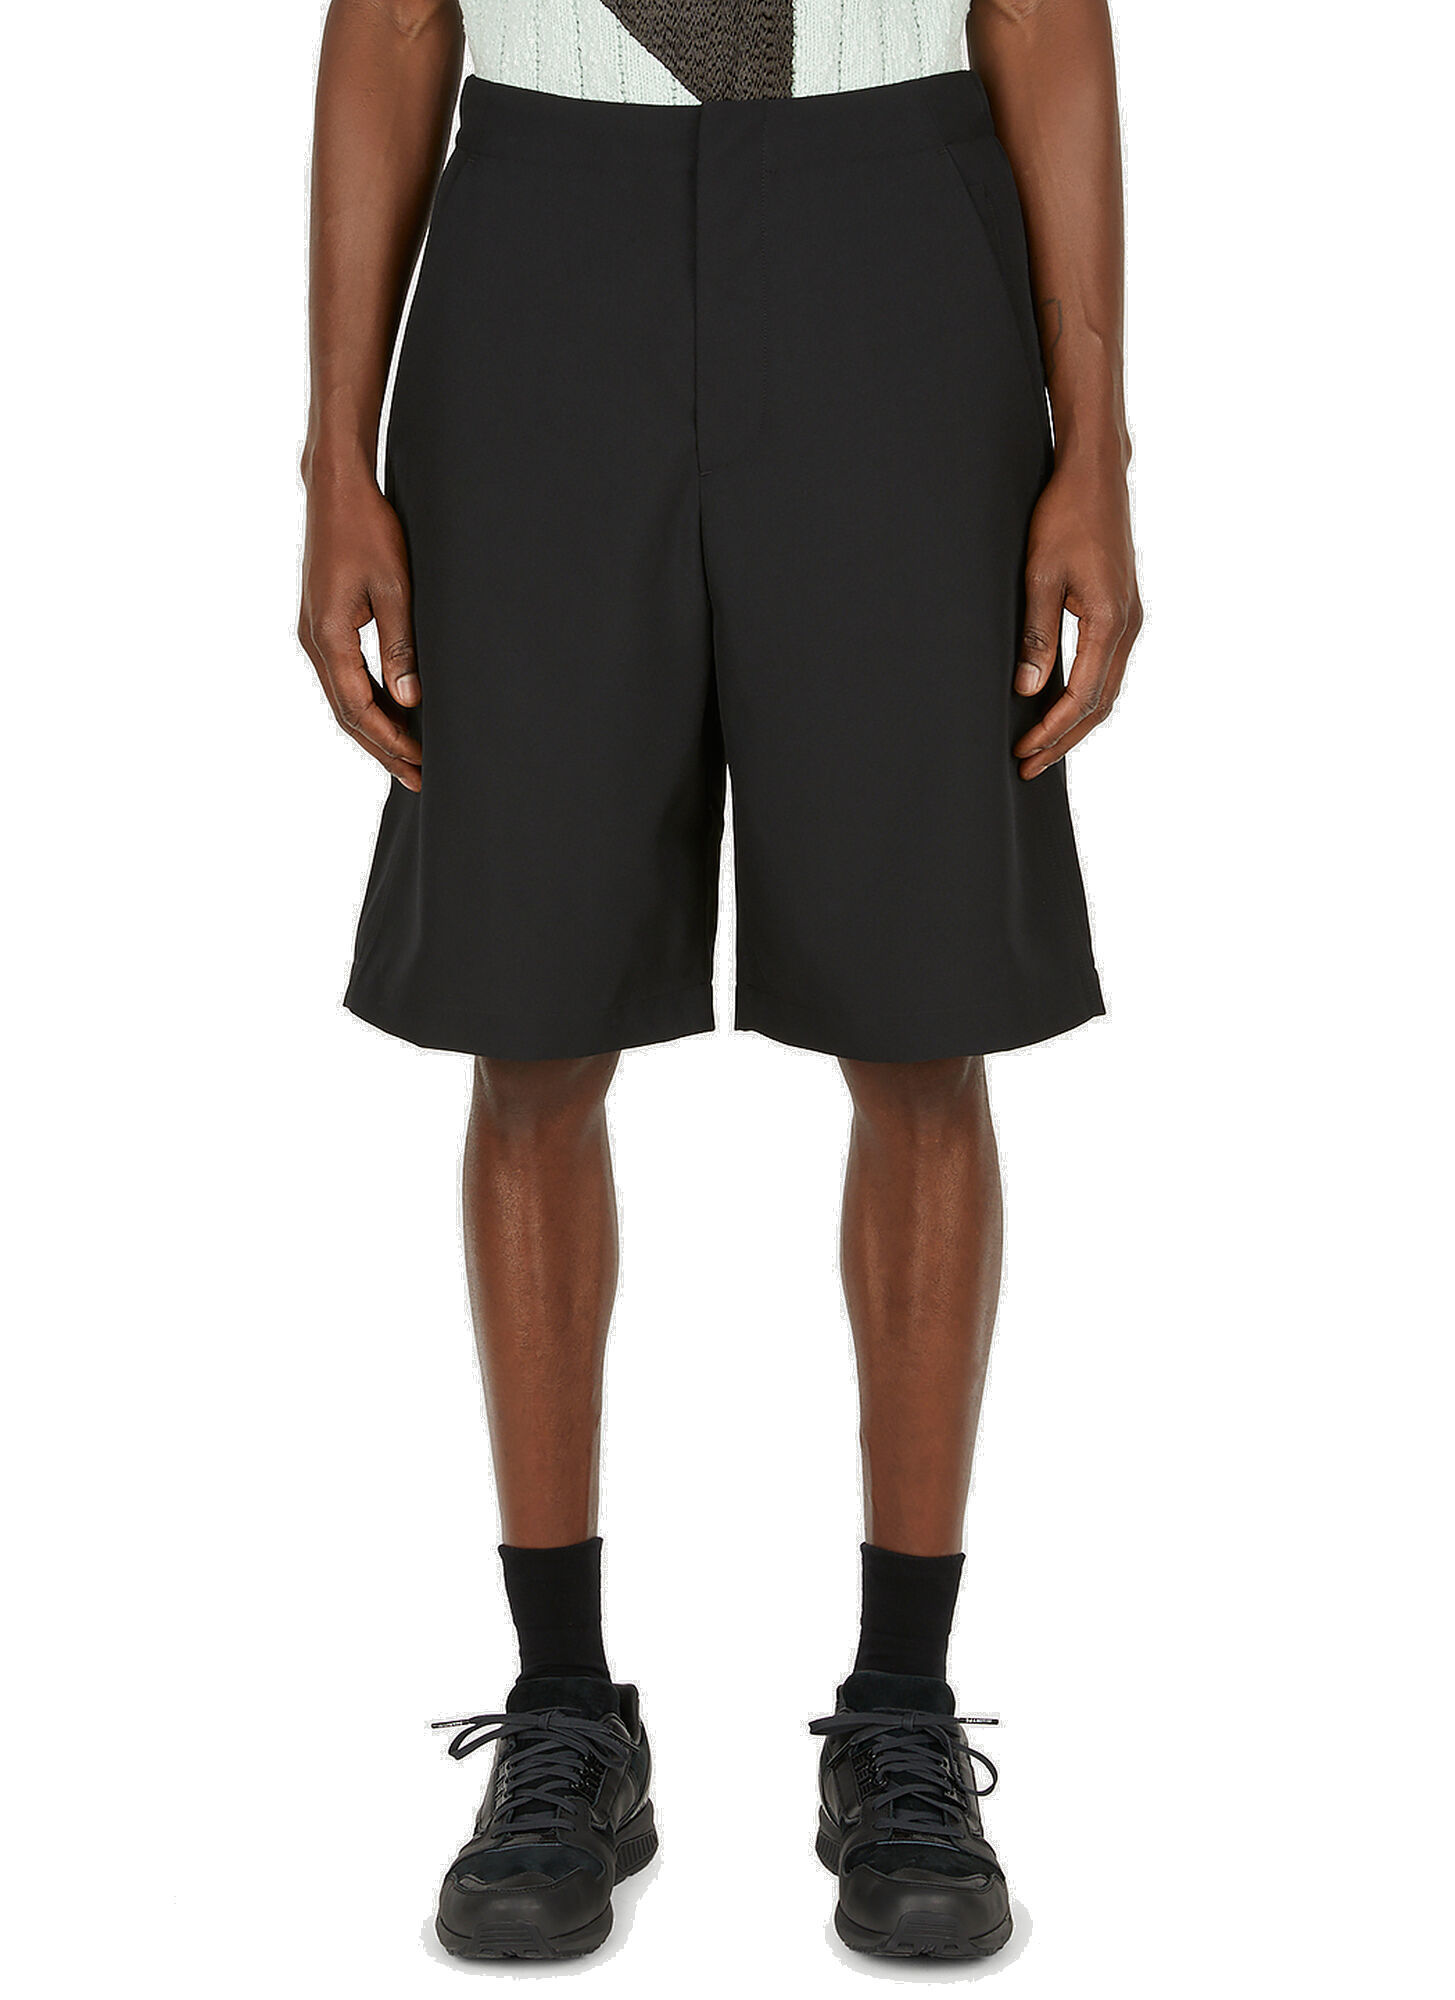 Vapor Shorts in Black OAMC